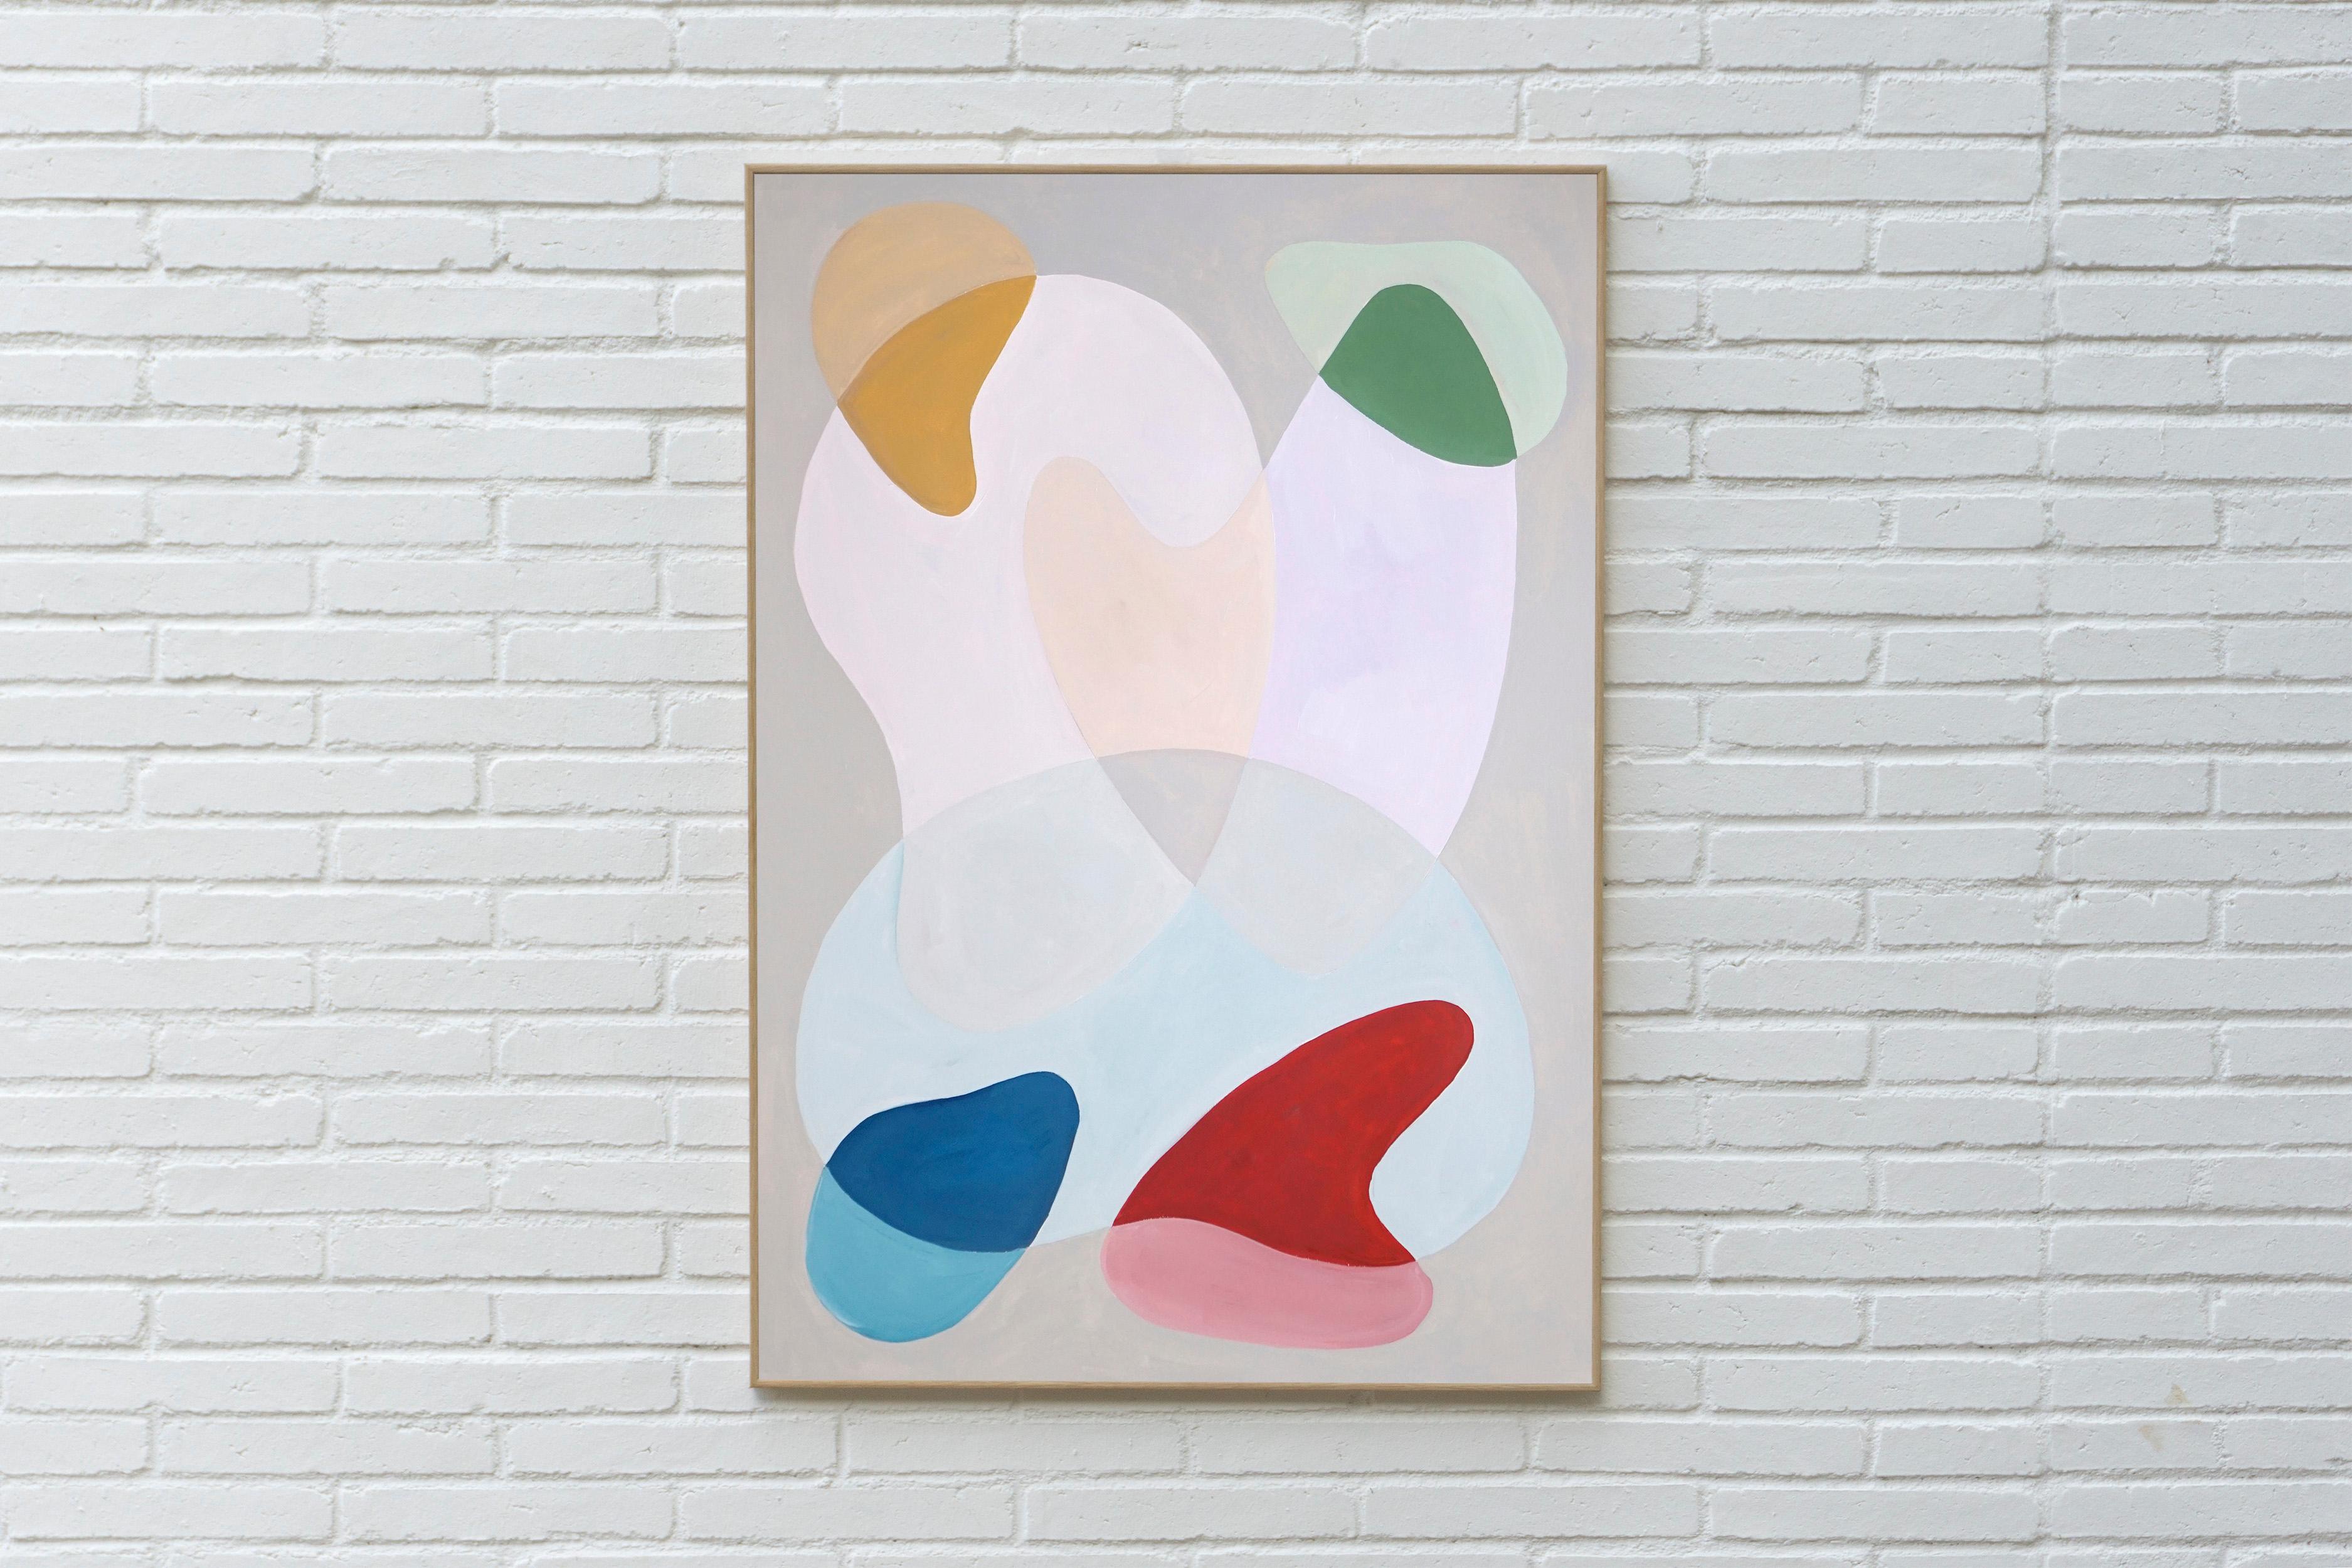 Subtile pastellfarbene Kurven, organische Mid-Century-Formen, getönte Daunenfarben, Transparenz – Painting von Ryan Rivadeneyra